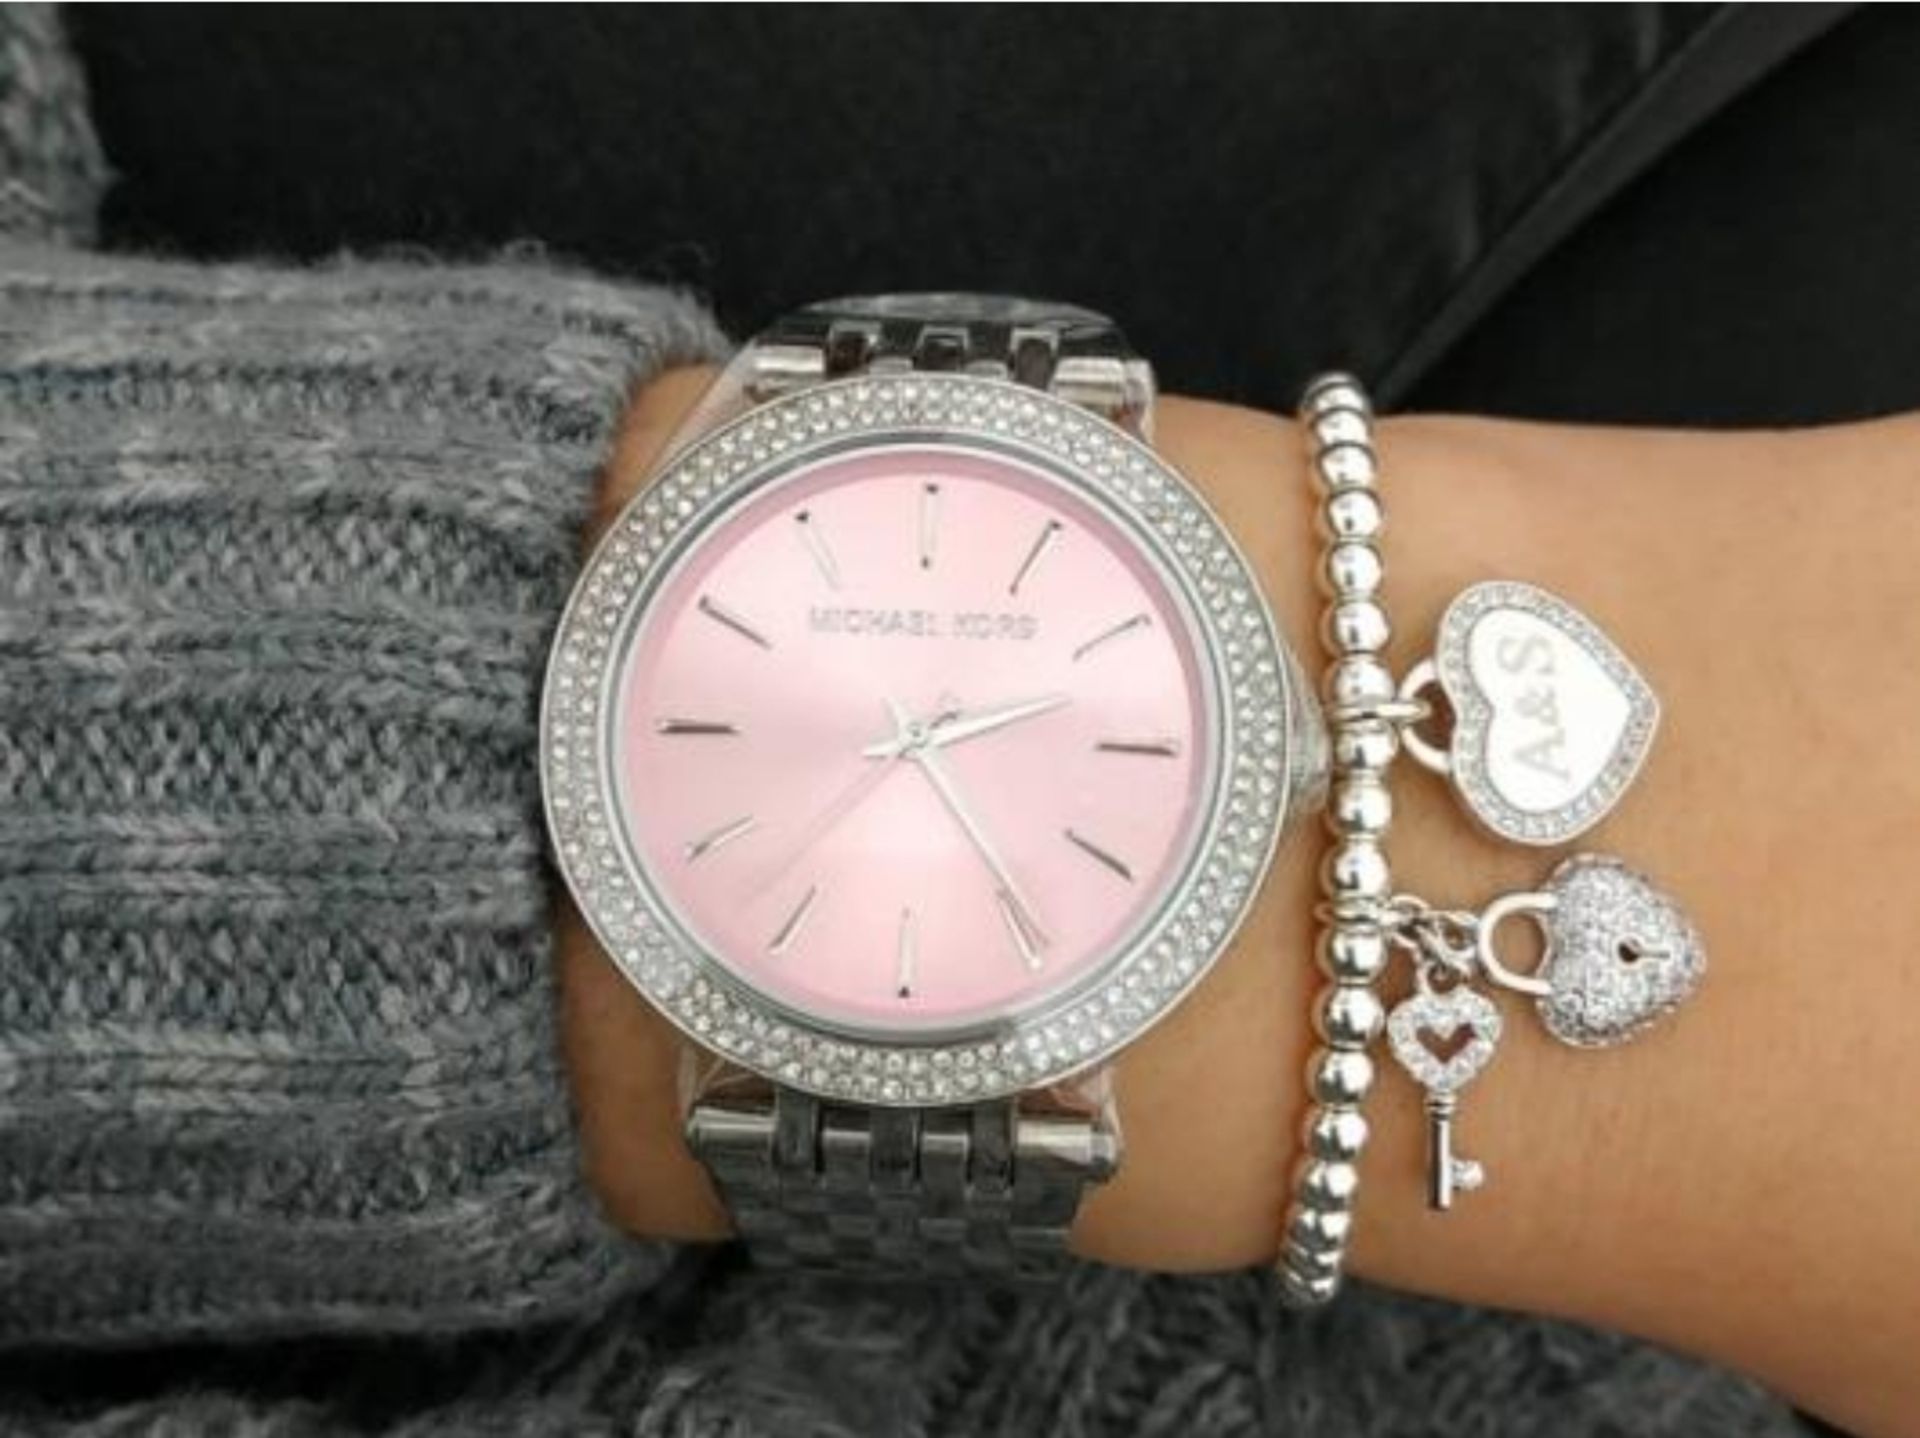 Michael Kors MK3352 Darci Pink & Silver Stainless Steel Ladies Watch - Image 2 of 8